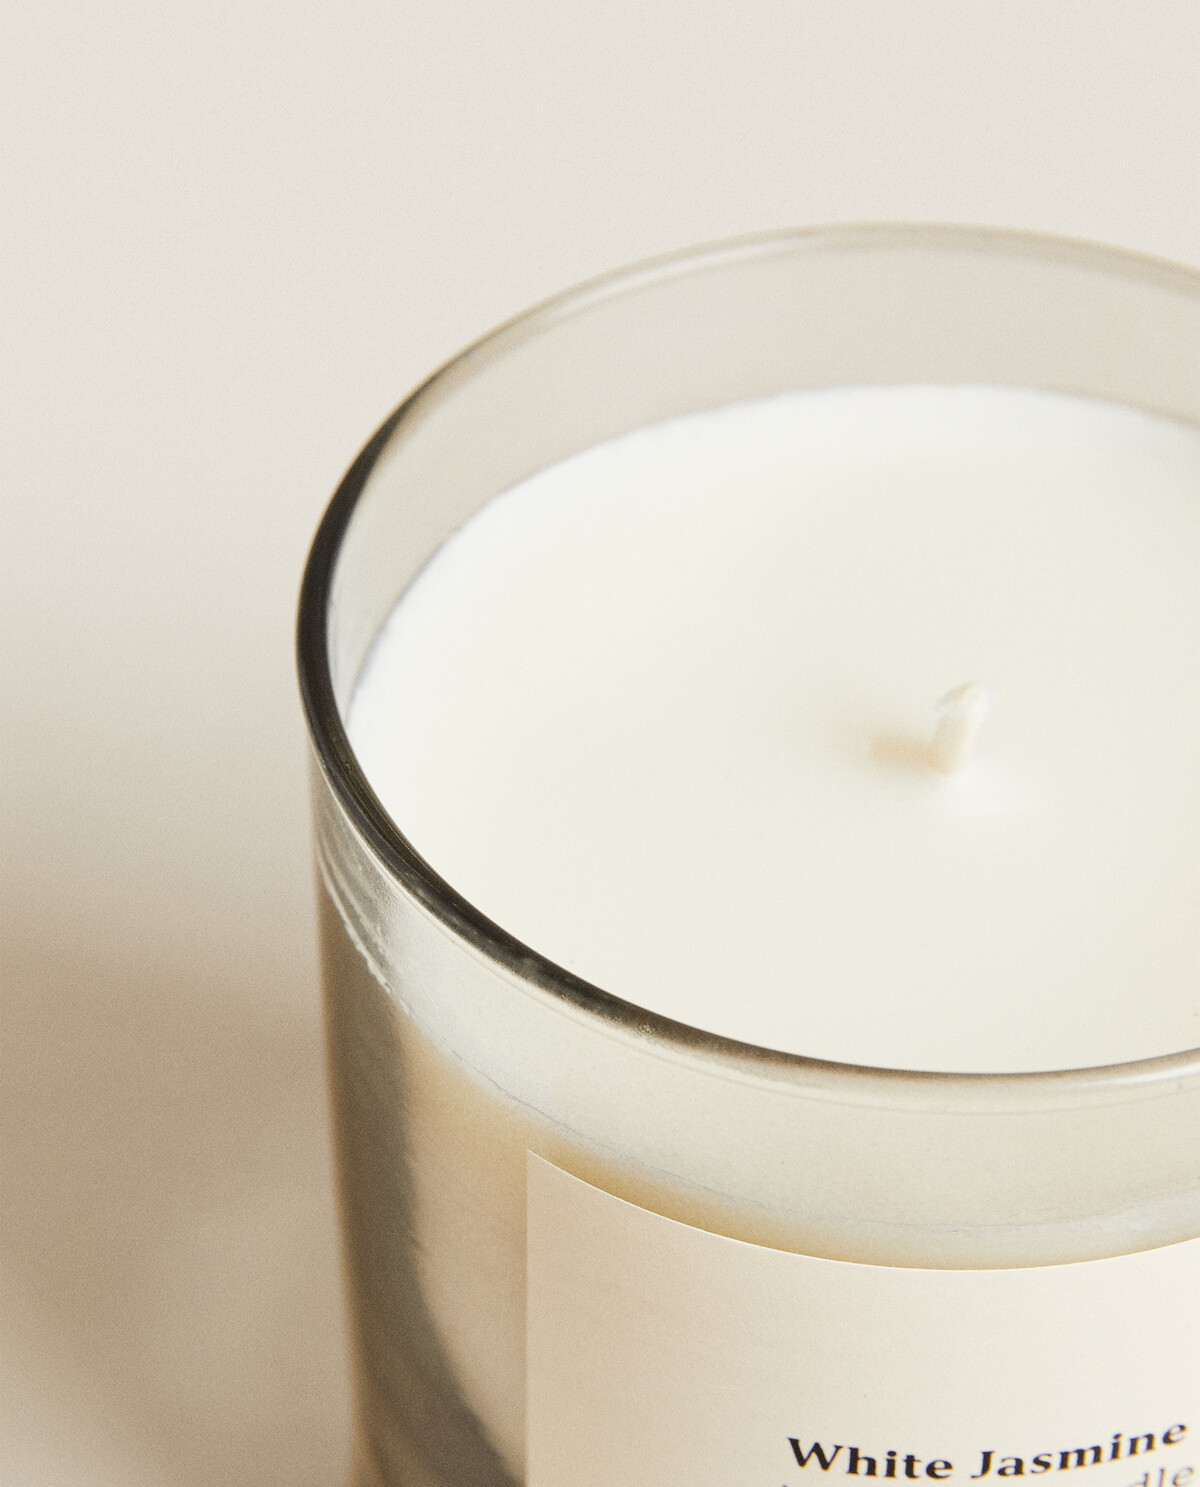 Ipuro - Bougie parfumée décorative ipuro White lily - Bougies parfumées  minimalistes et épurées dans un verre - Bougies parfumée214 - Cdiscount  Maison